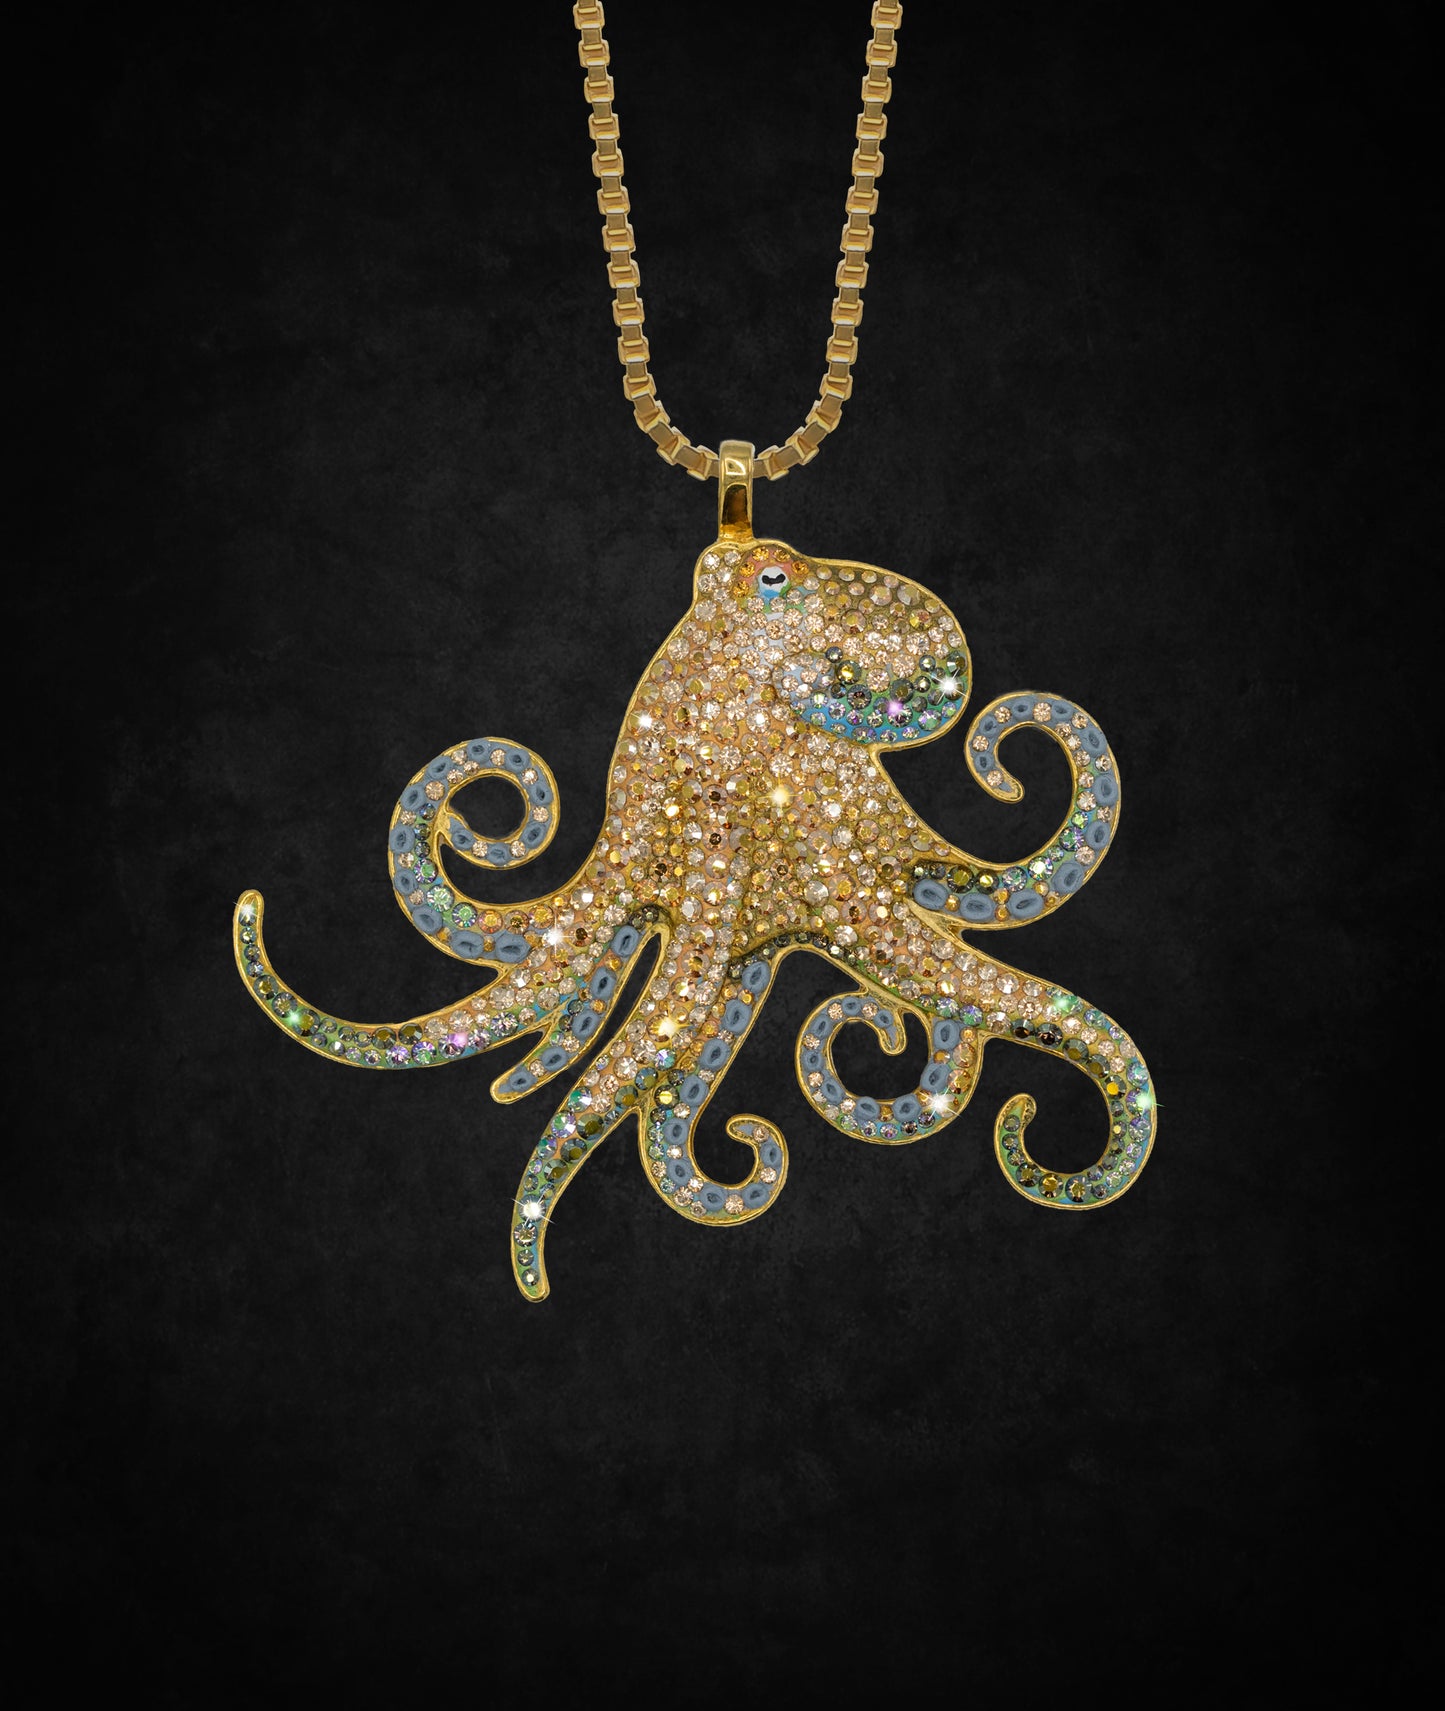 The Golden Octopus